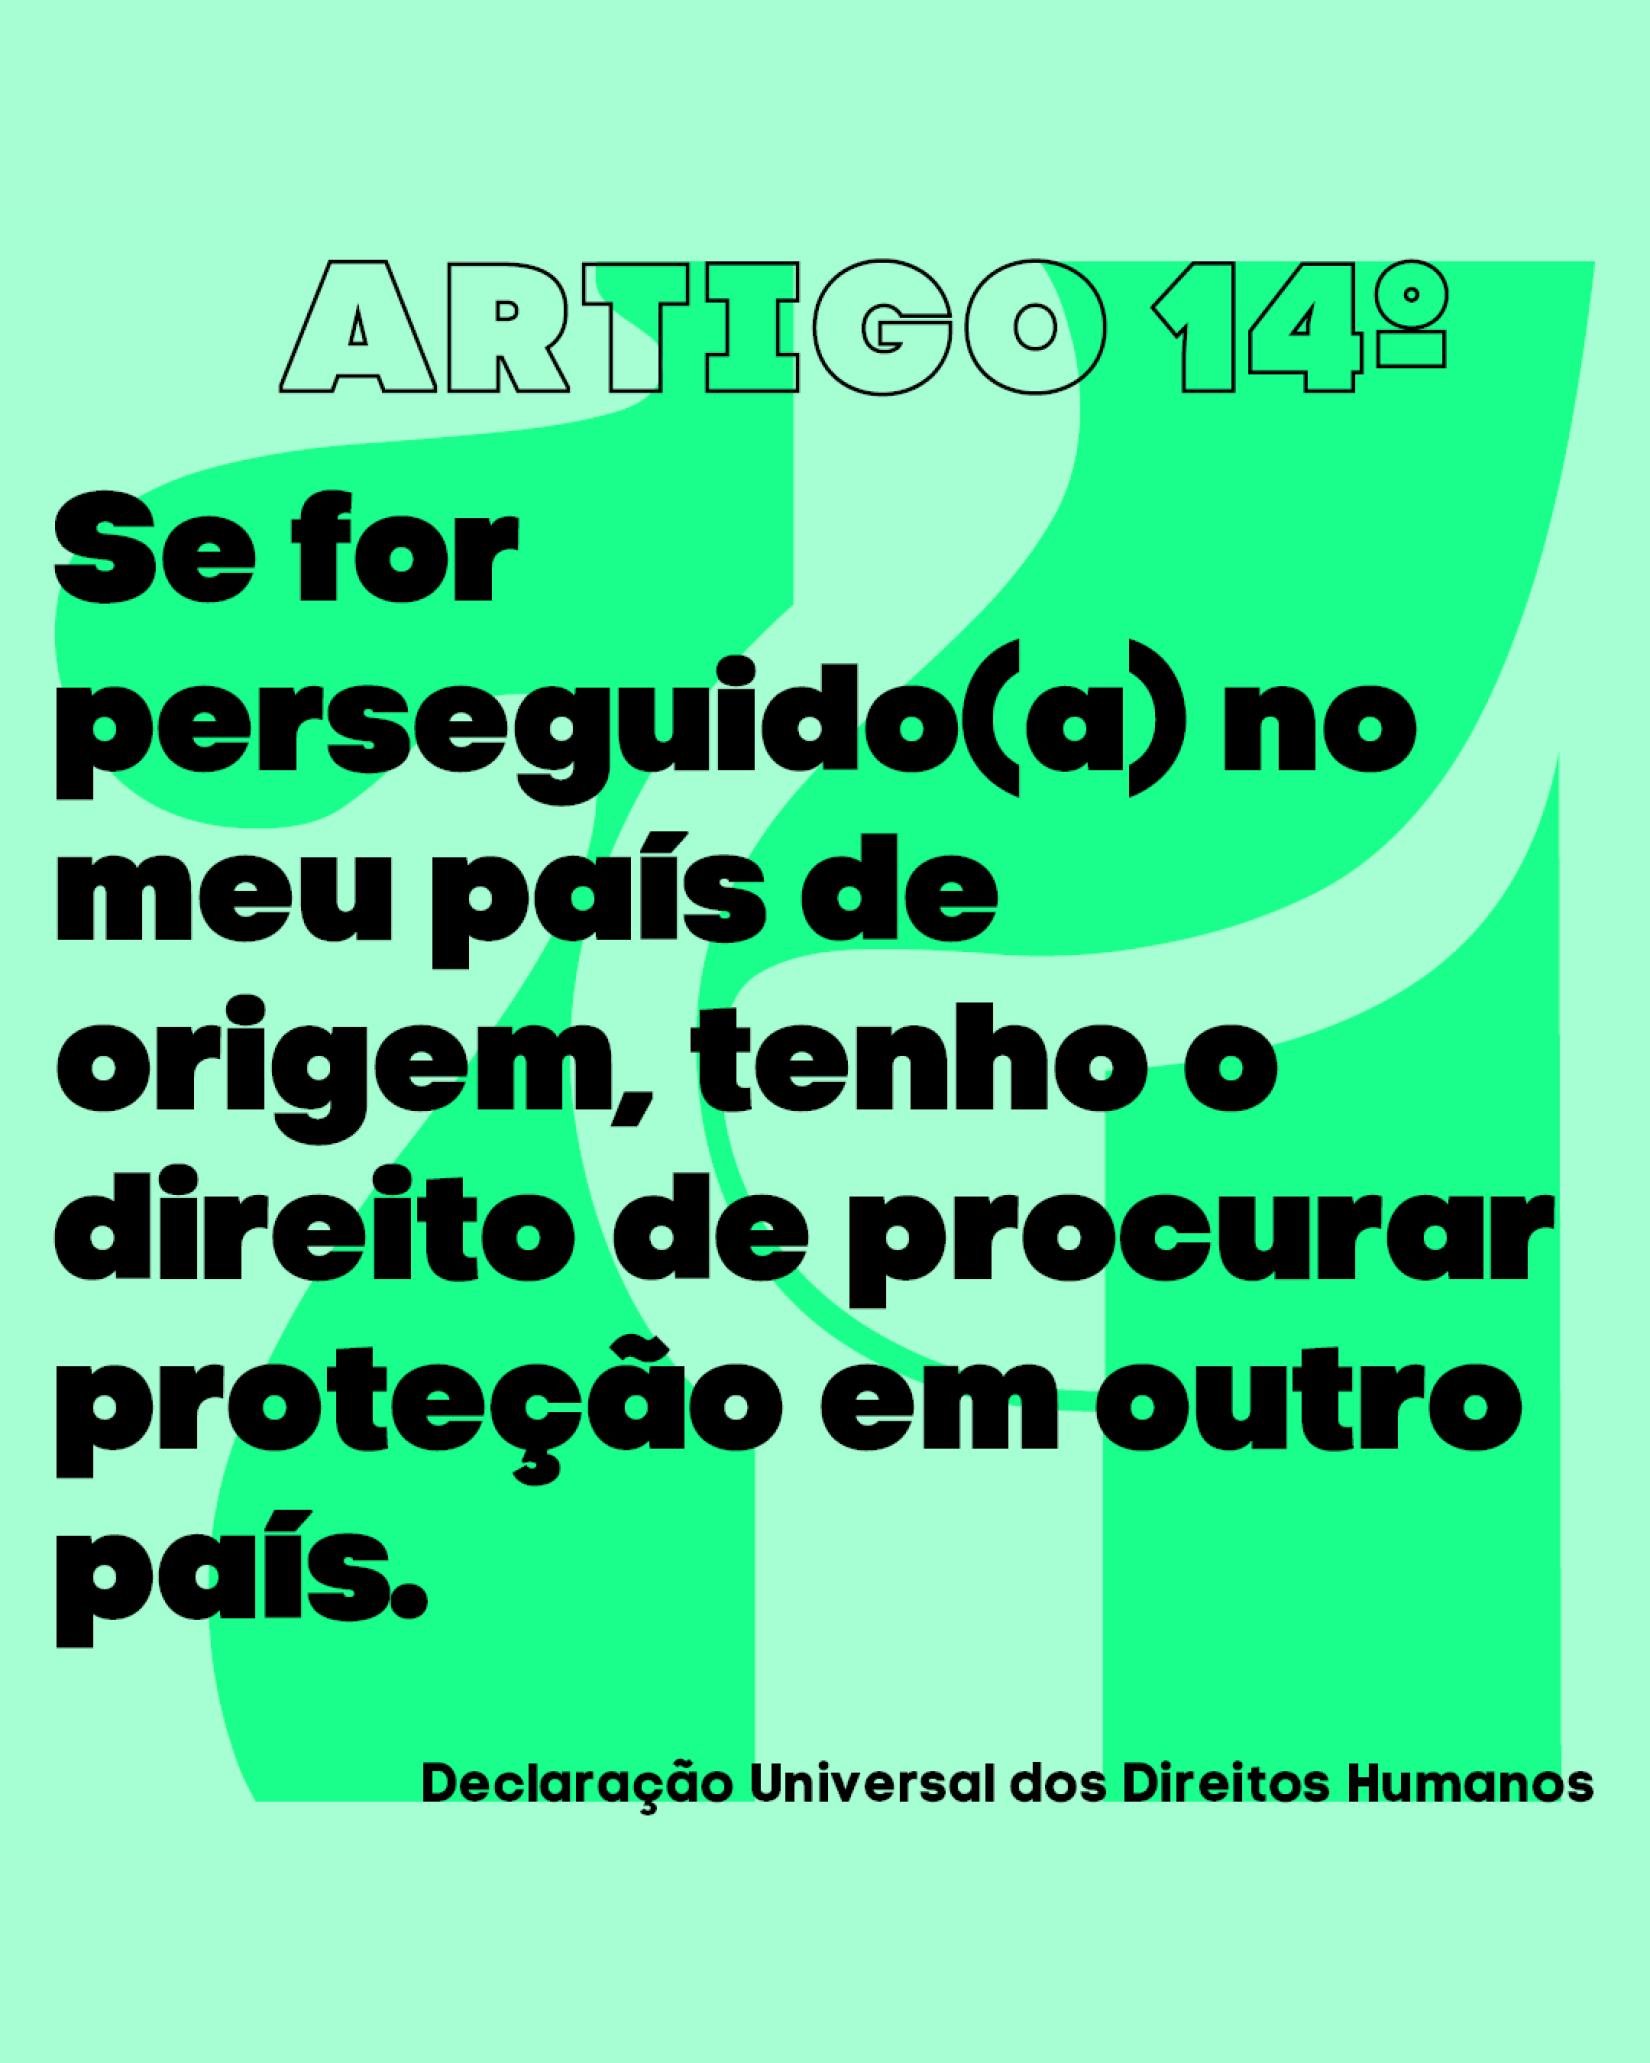 Artigo 14º da Declaração Universal dos Direitos Humanos